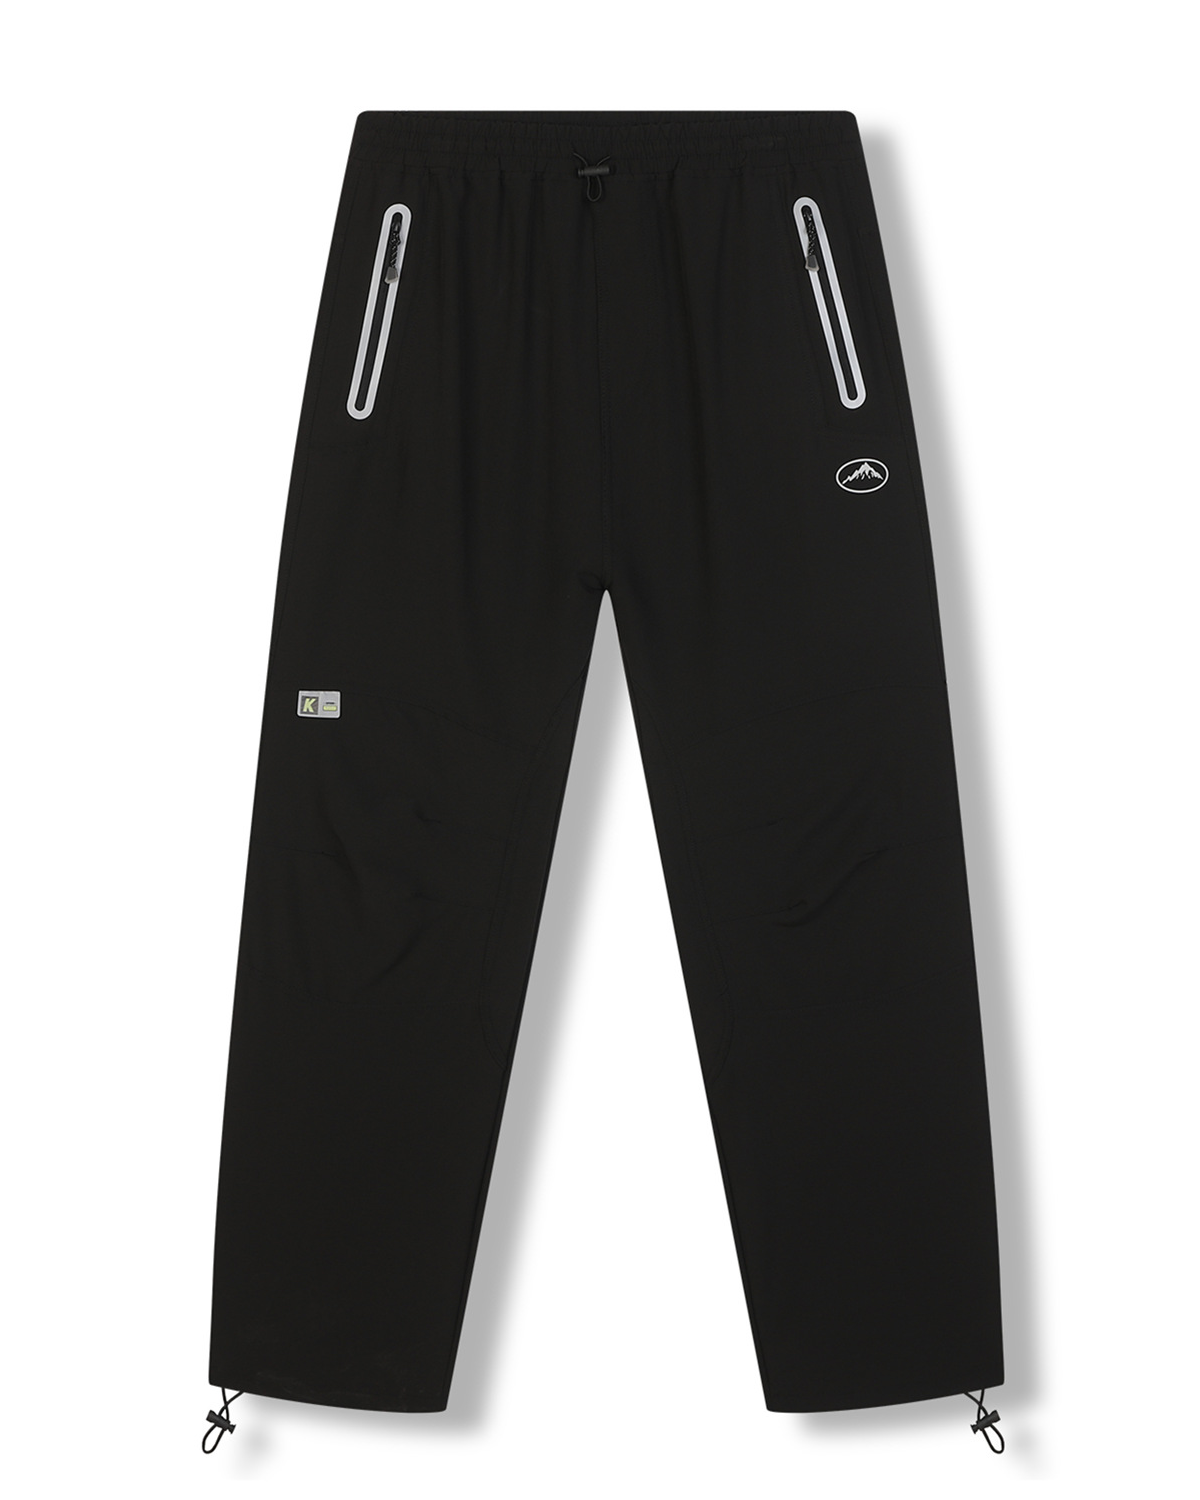 Pánské softshellové kalhoty - KUGO HK7588, celočerná Barva: Černá, Velikost: 3XL